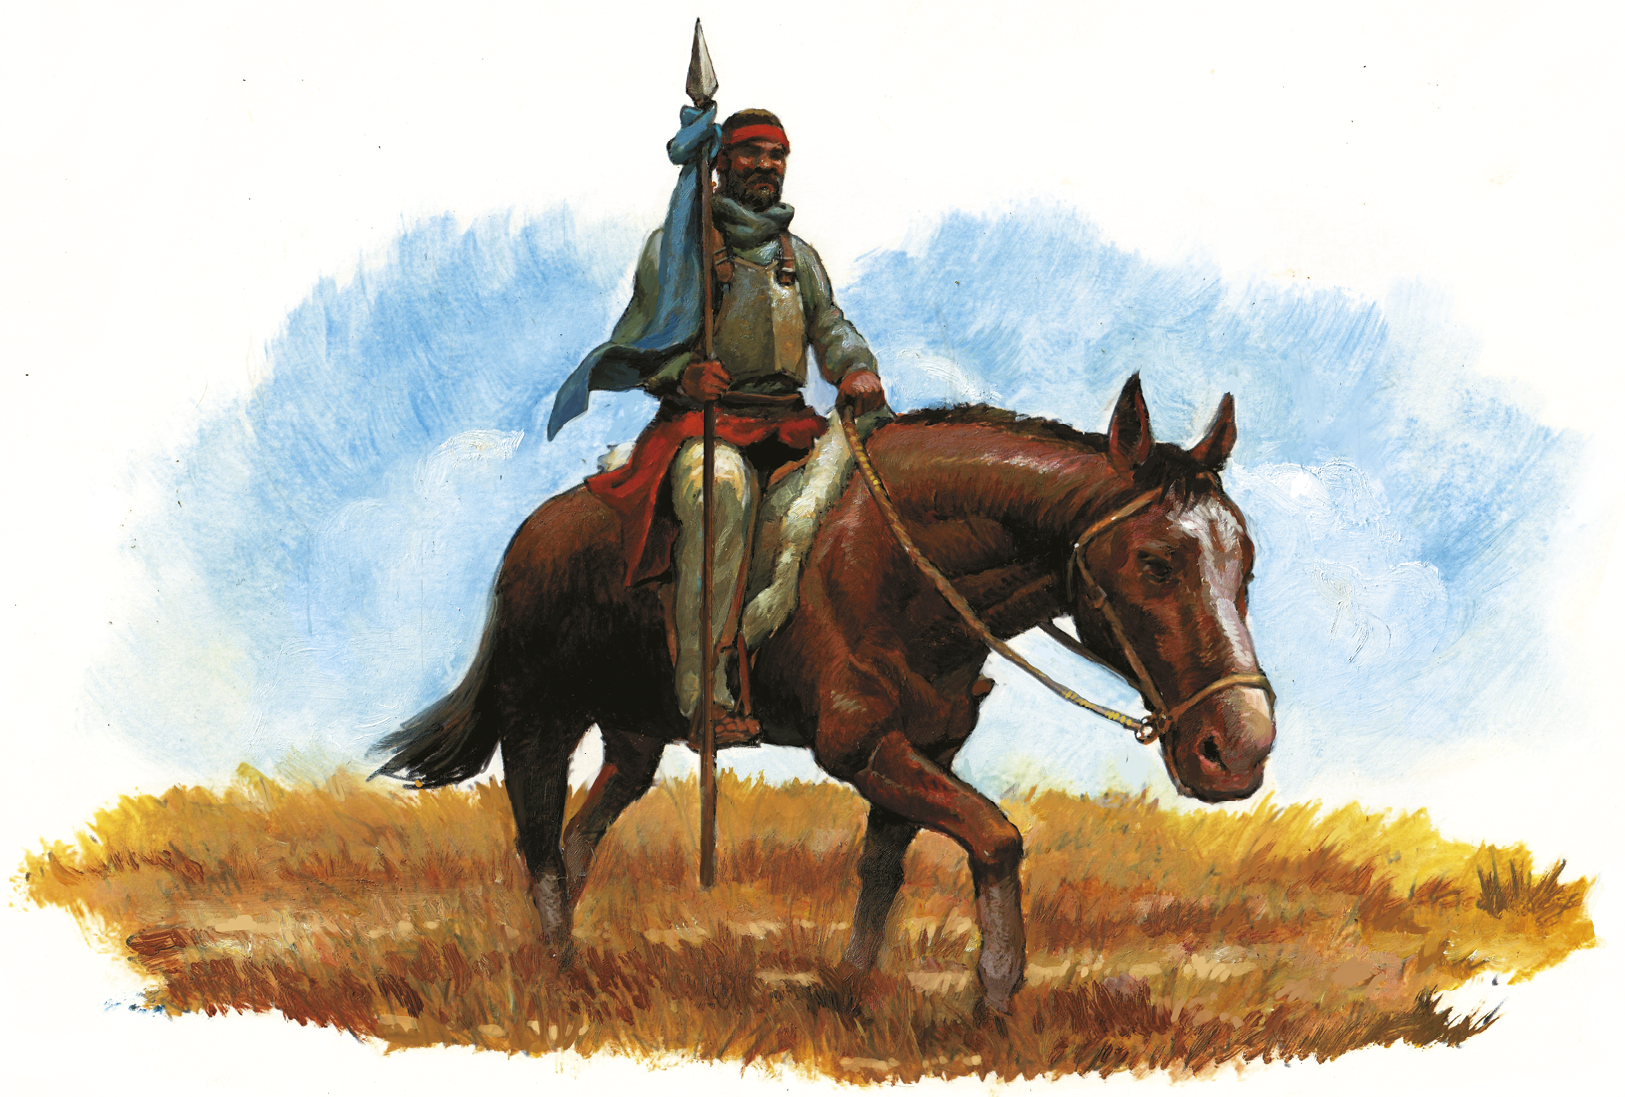 Ilustração. Homem negro montado a cavalo em ambiente aberto, com solo em vegetação rasteira e marrom e céu azul ao fundo. O homem usa uma faixa vermelha na cabeça, um lenço no pescoço, uma manta vermelha na cintura, está descalço e segura uma lança pontuda com um pano azul amarrado na ponta.